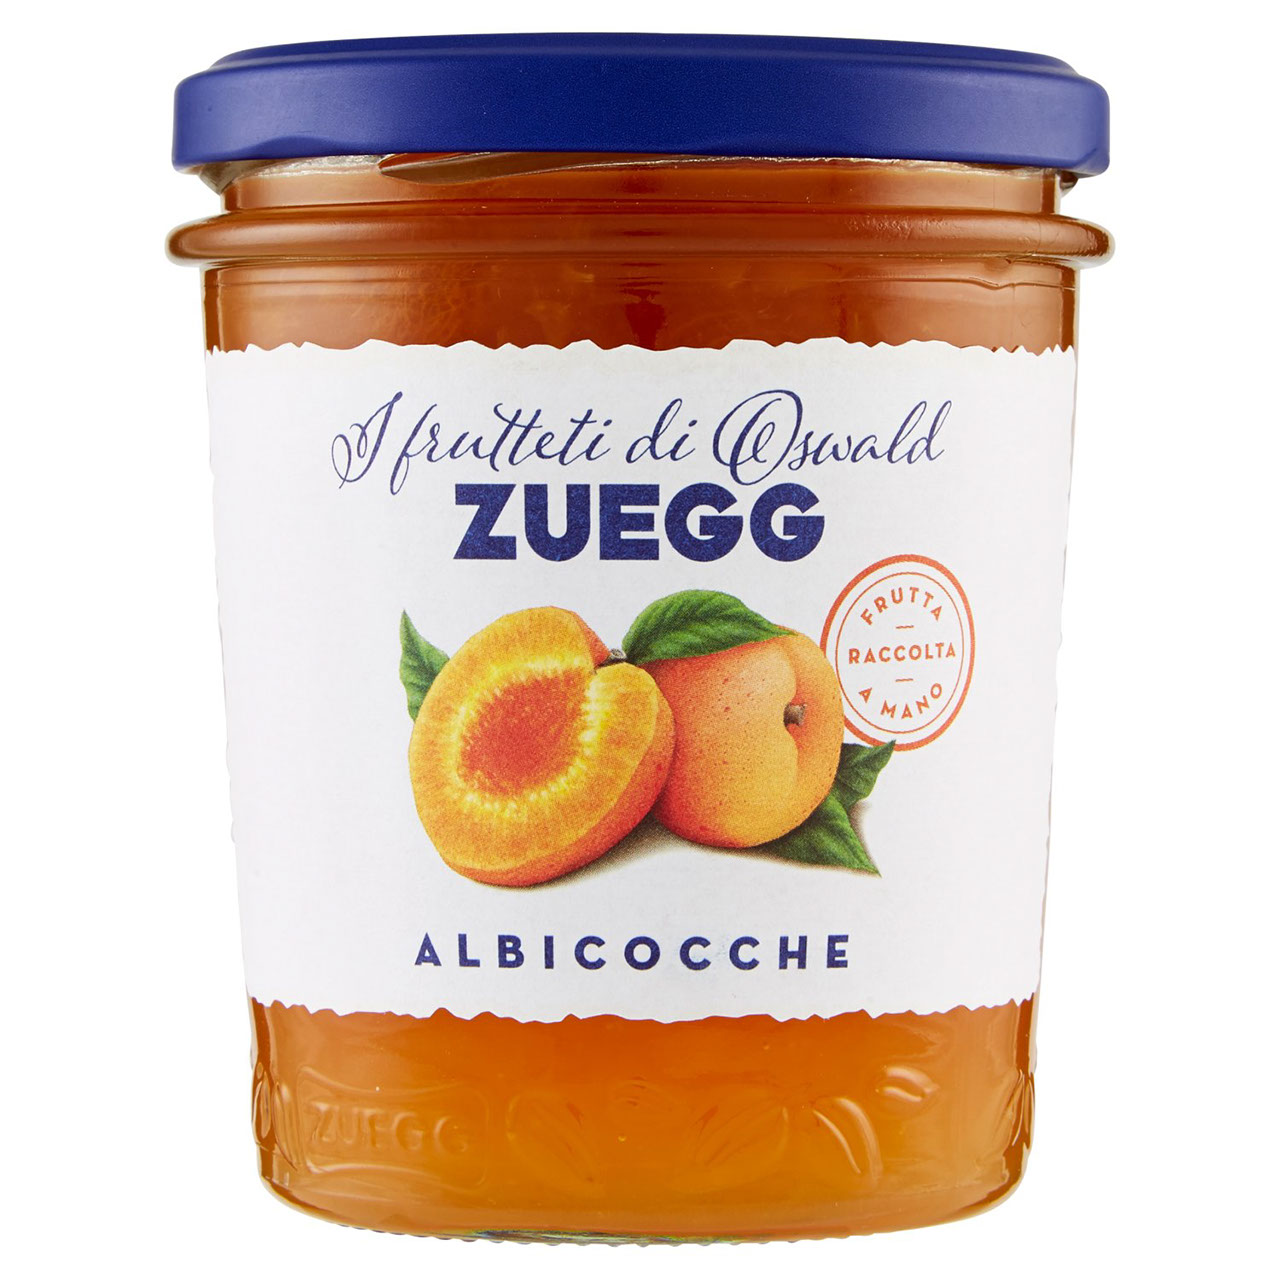 Marmellata Zuegg di Albicocche in vendita online